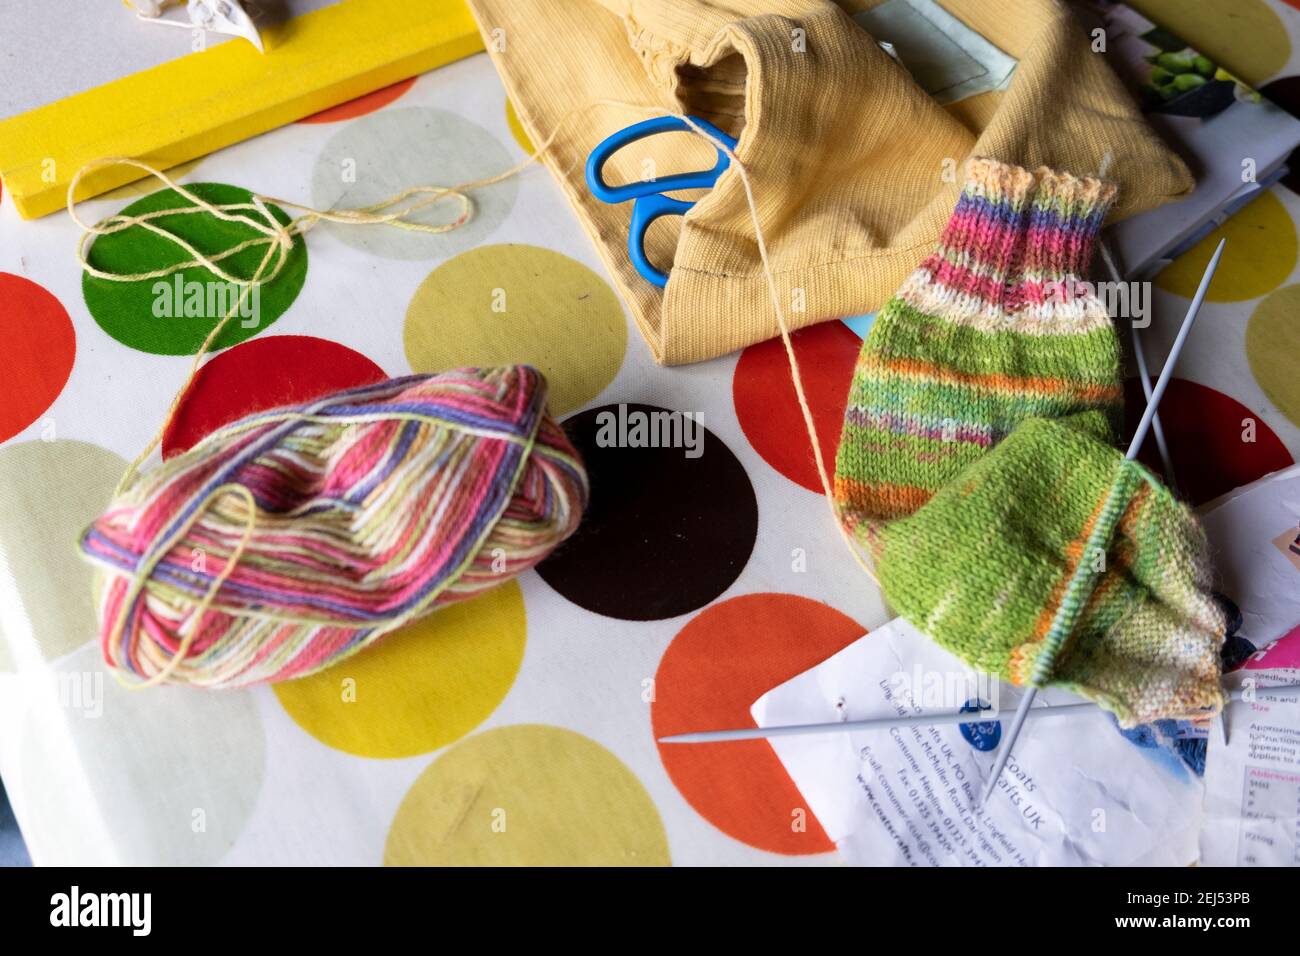 Balle de laine assise sur une table avec des aiguilles à tricoter, chaussette partiellement tricotée, fil artisanal faisant chaud laine chaussettes de laine faites à la main pendant la pandémie de covid Royaume-Uni Banque D'Images